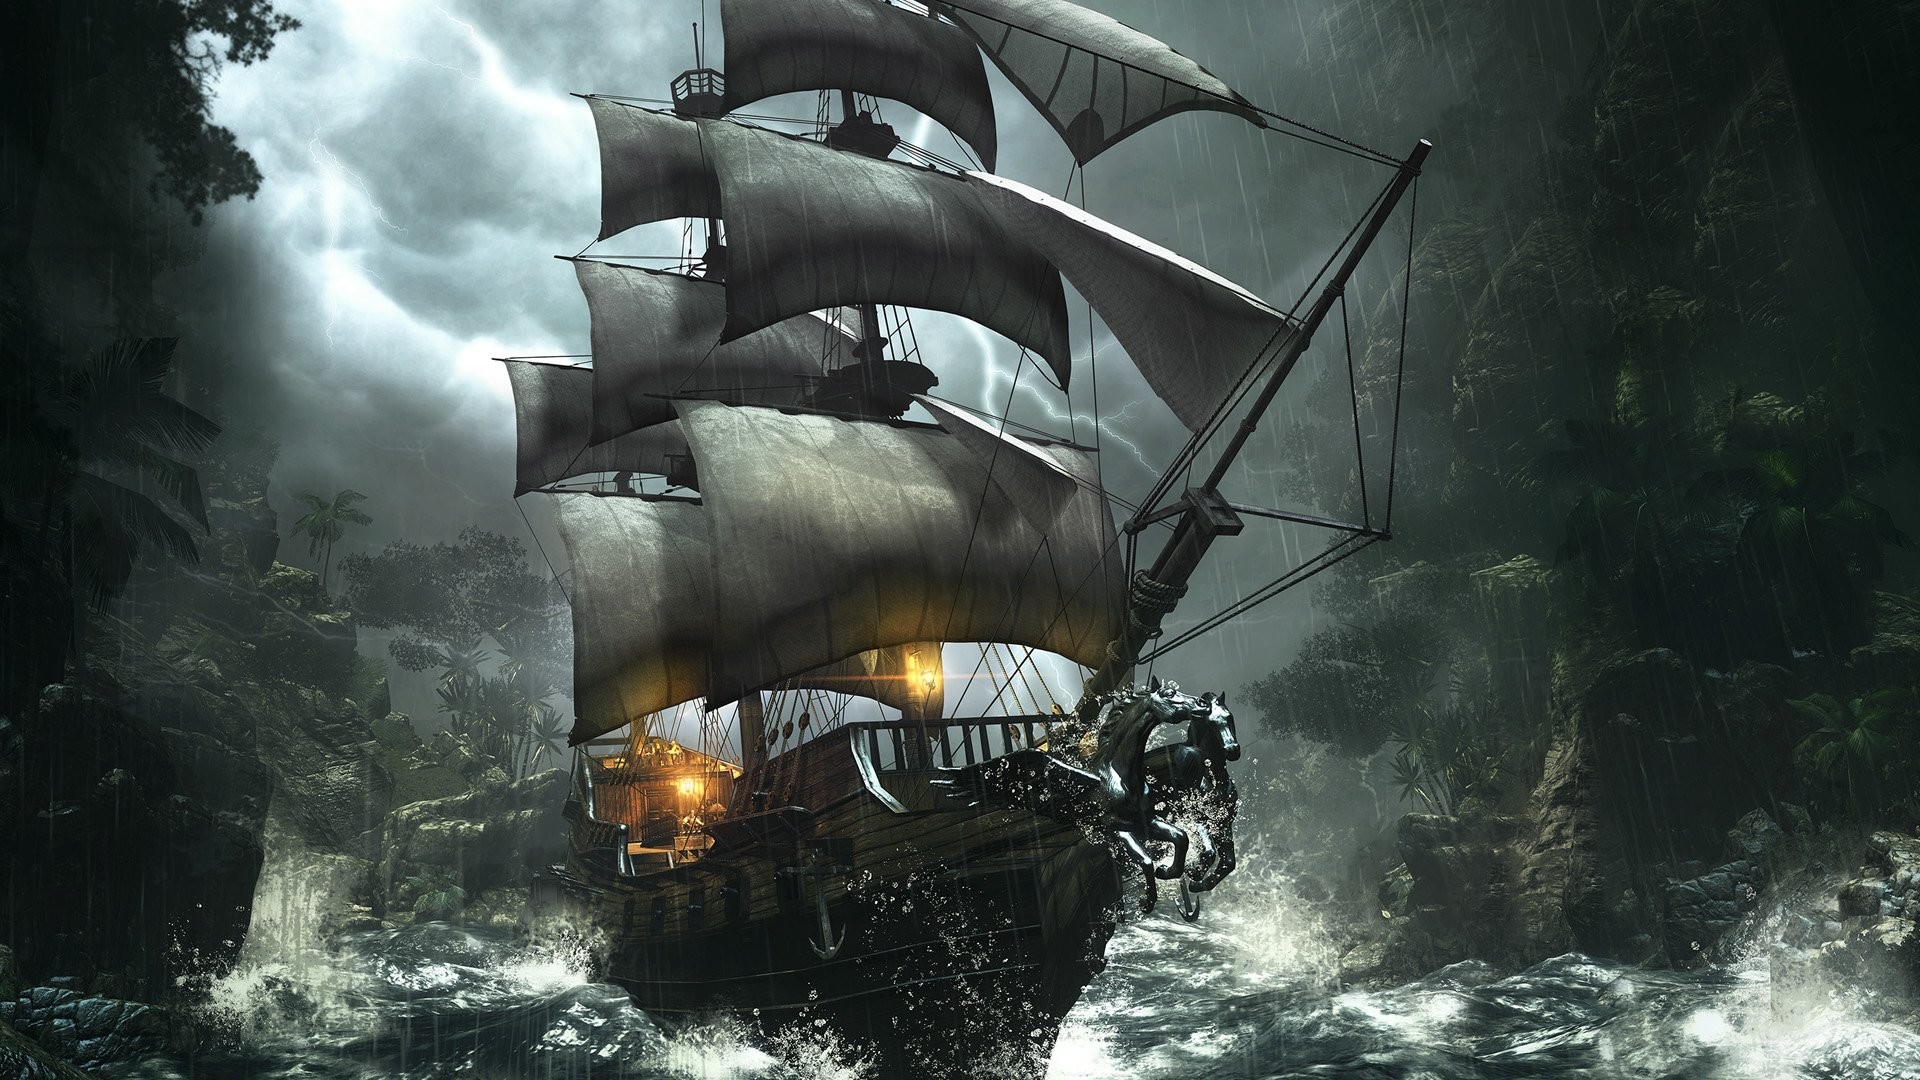 Pirate ship wallpaper hd